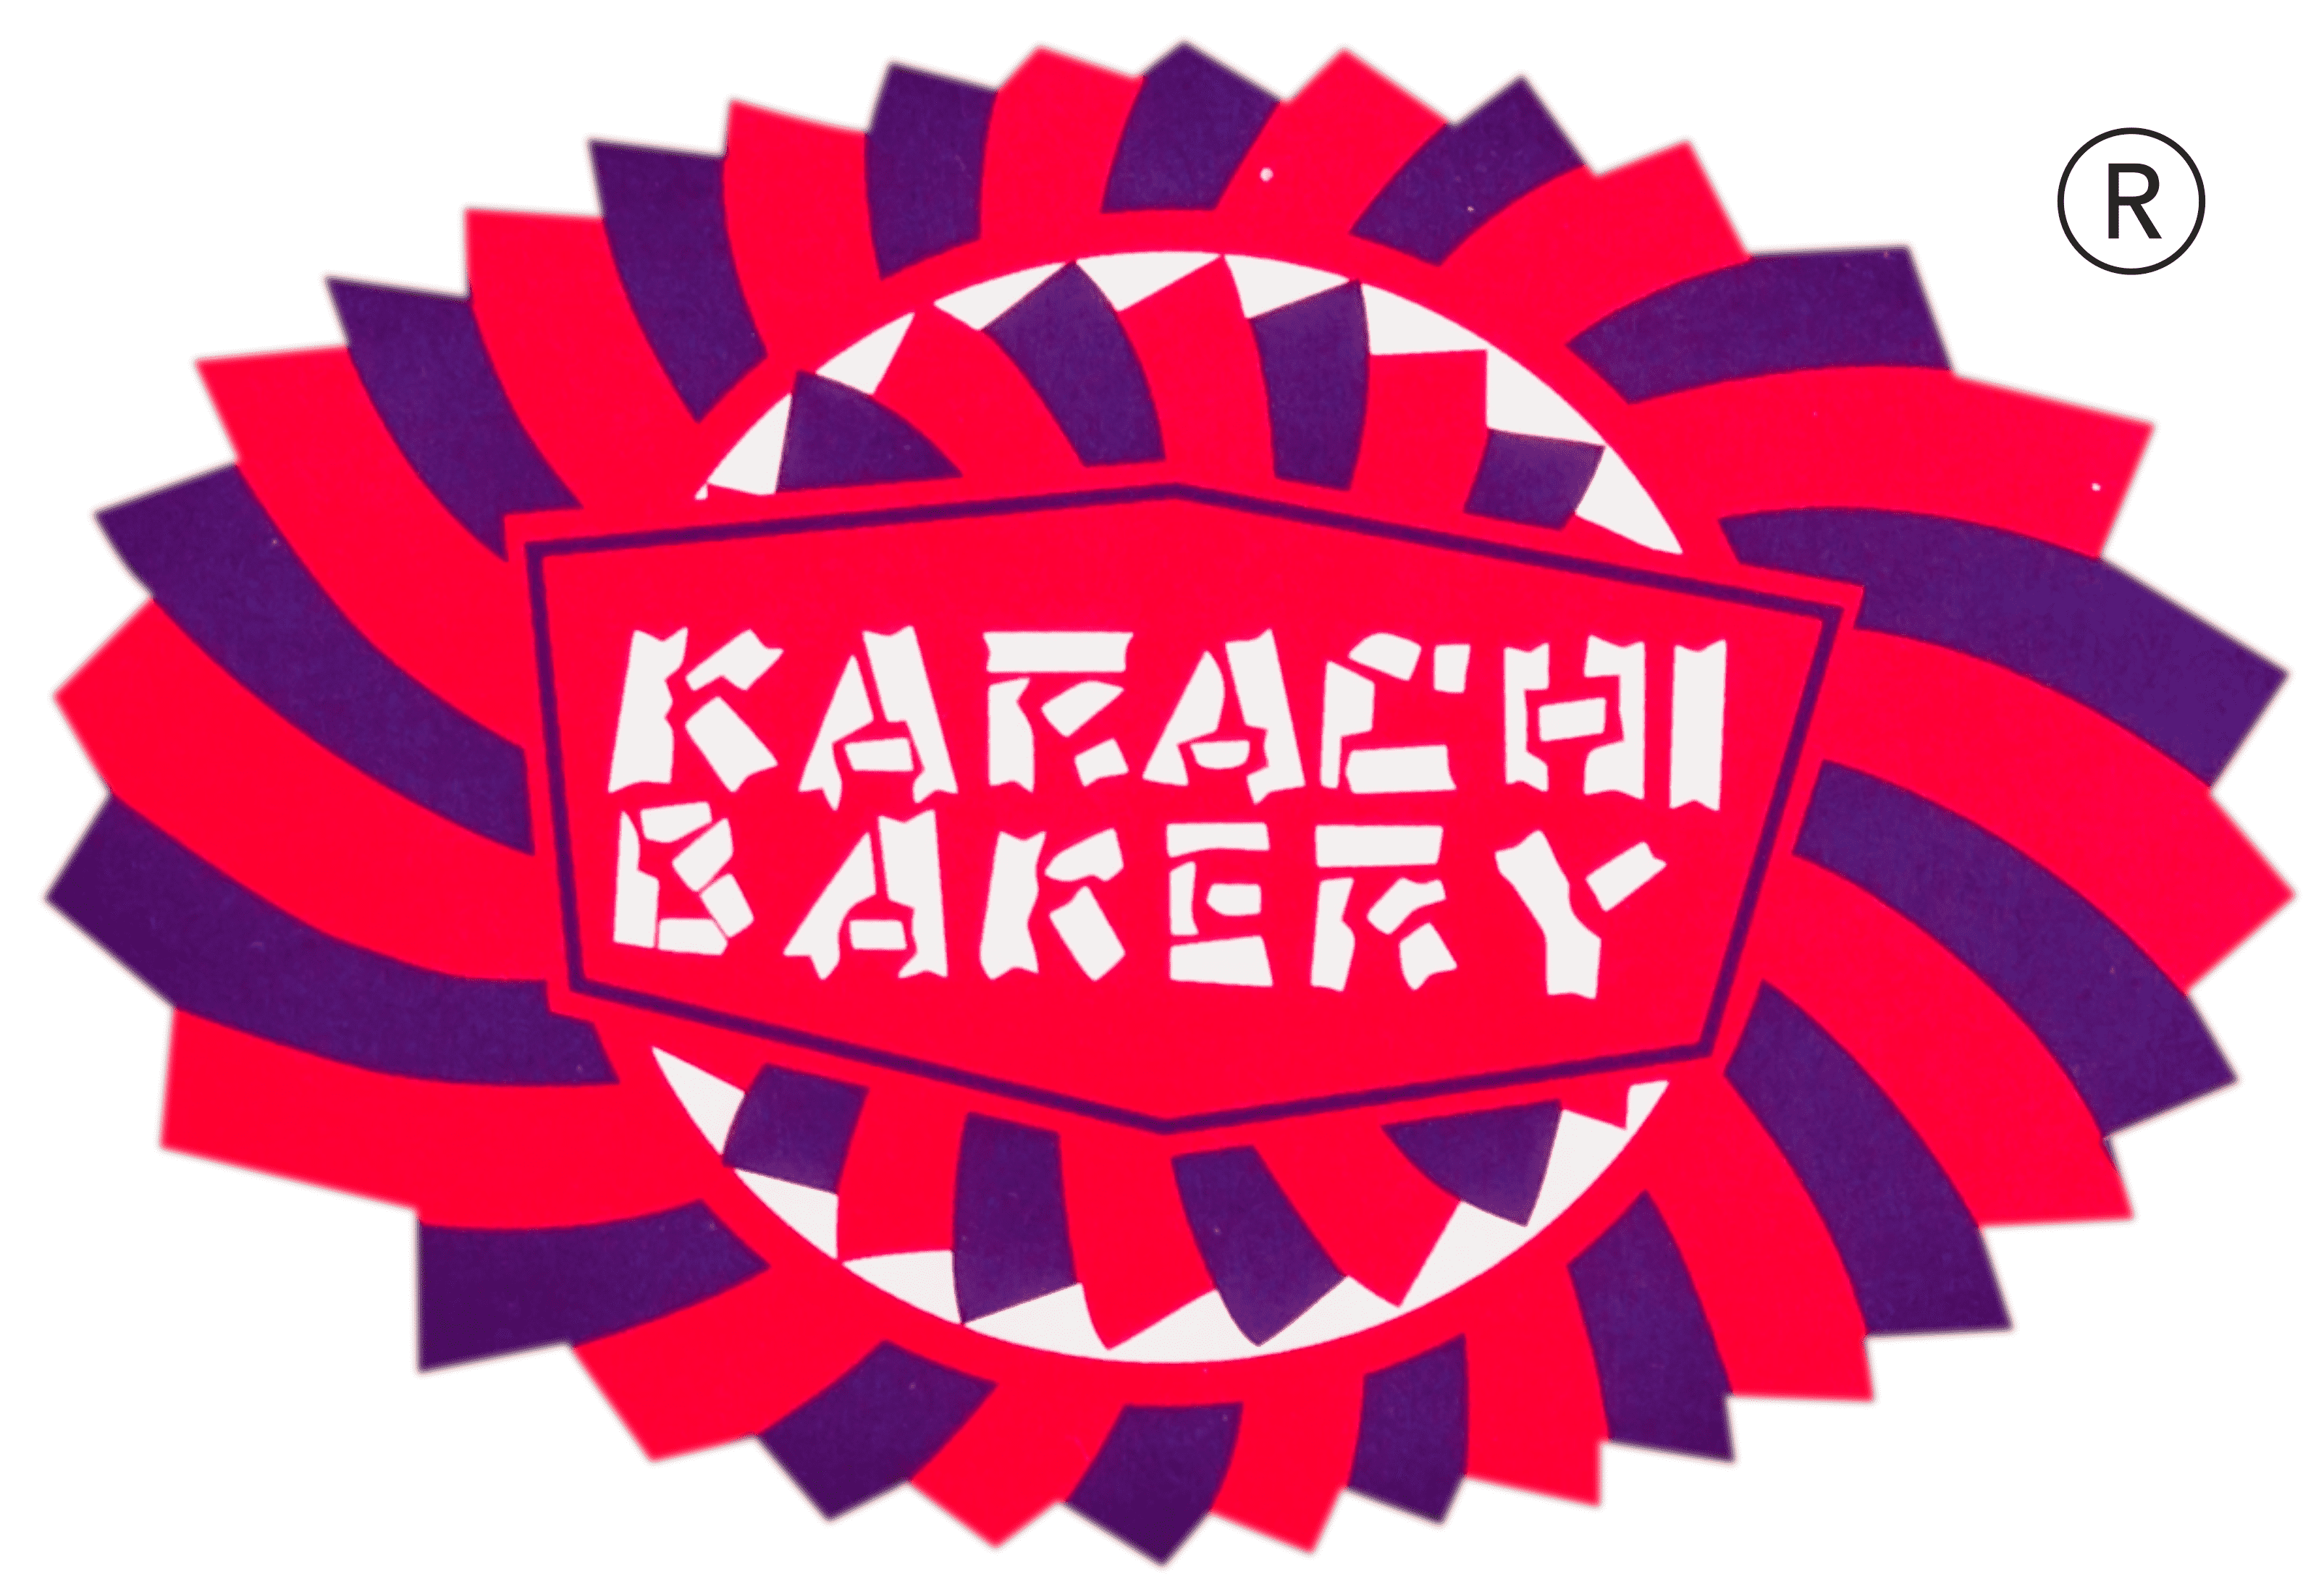 Karachi Bakery logo